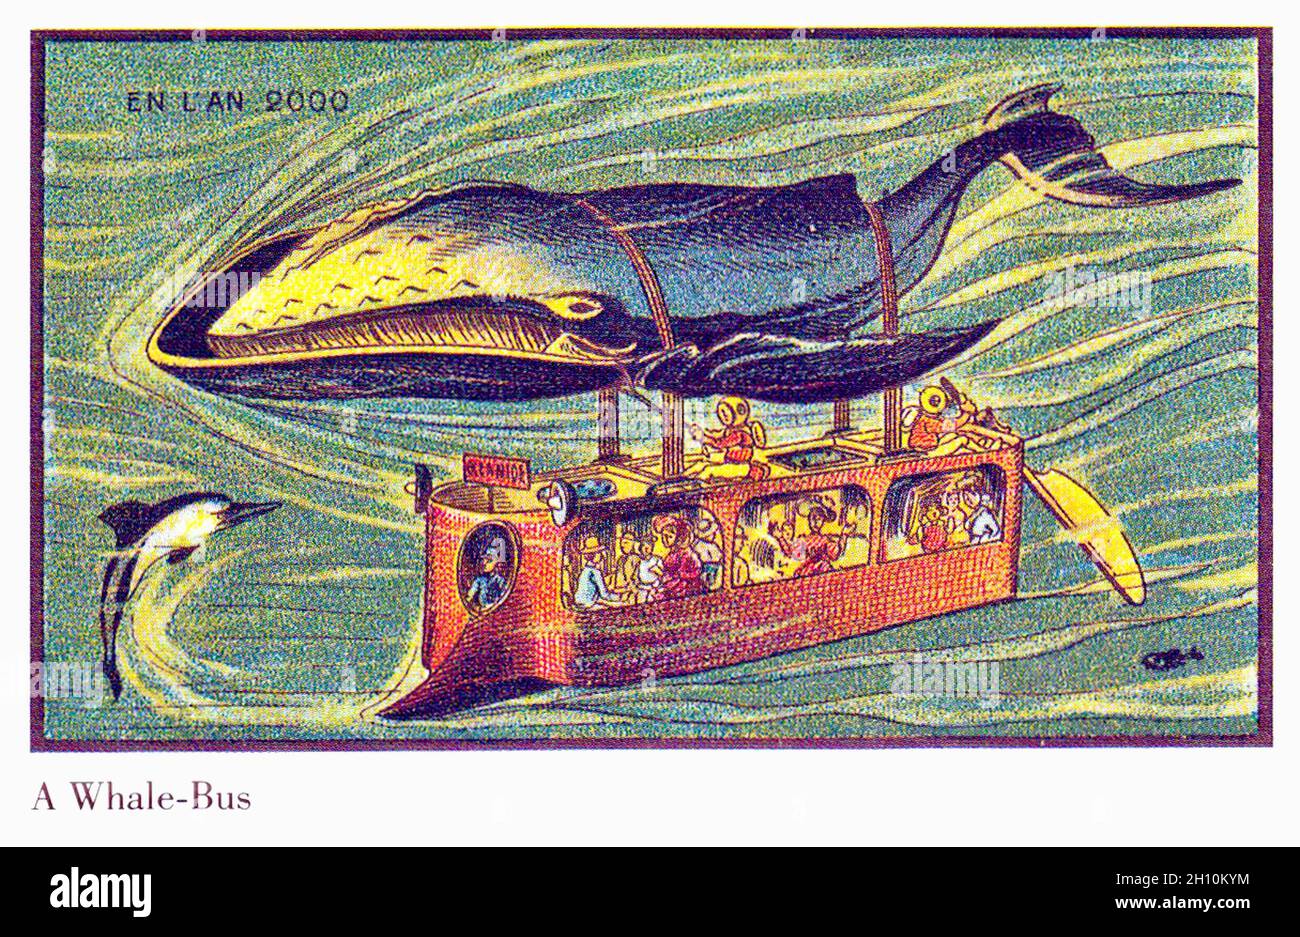 Jean-Marc côté - Un bus de baleines - en l'an 2000 - 1899 Banque D'Images